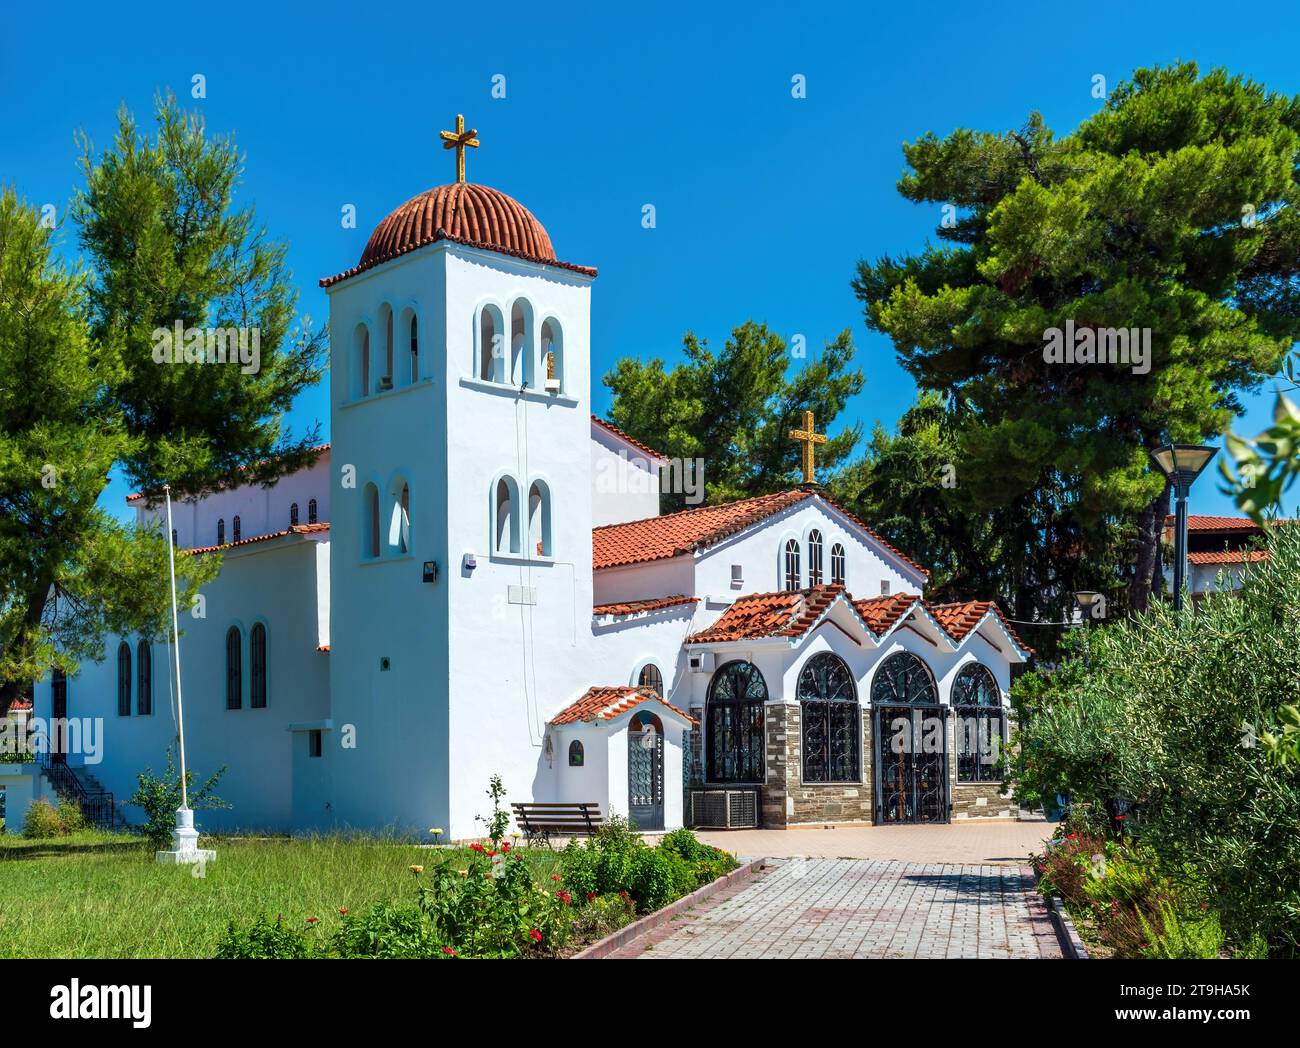 Orthodoxe Kirche in Griechenland. Chaniotis, Griechenland Stockfoto